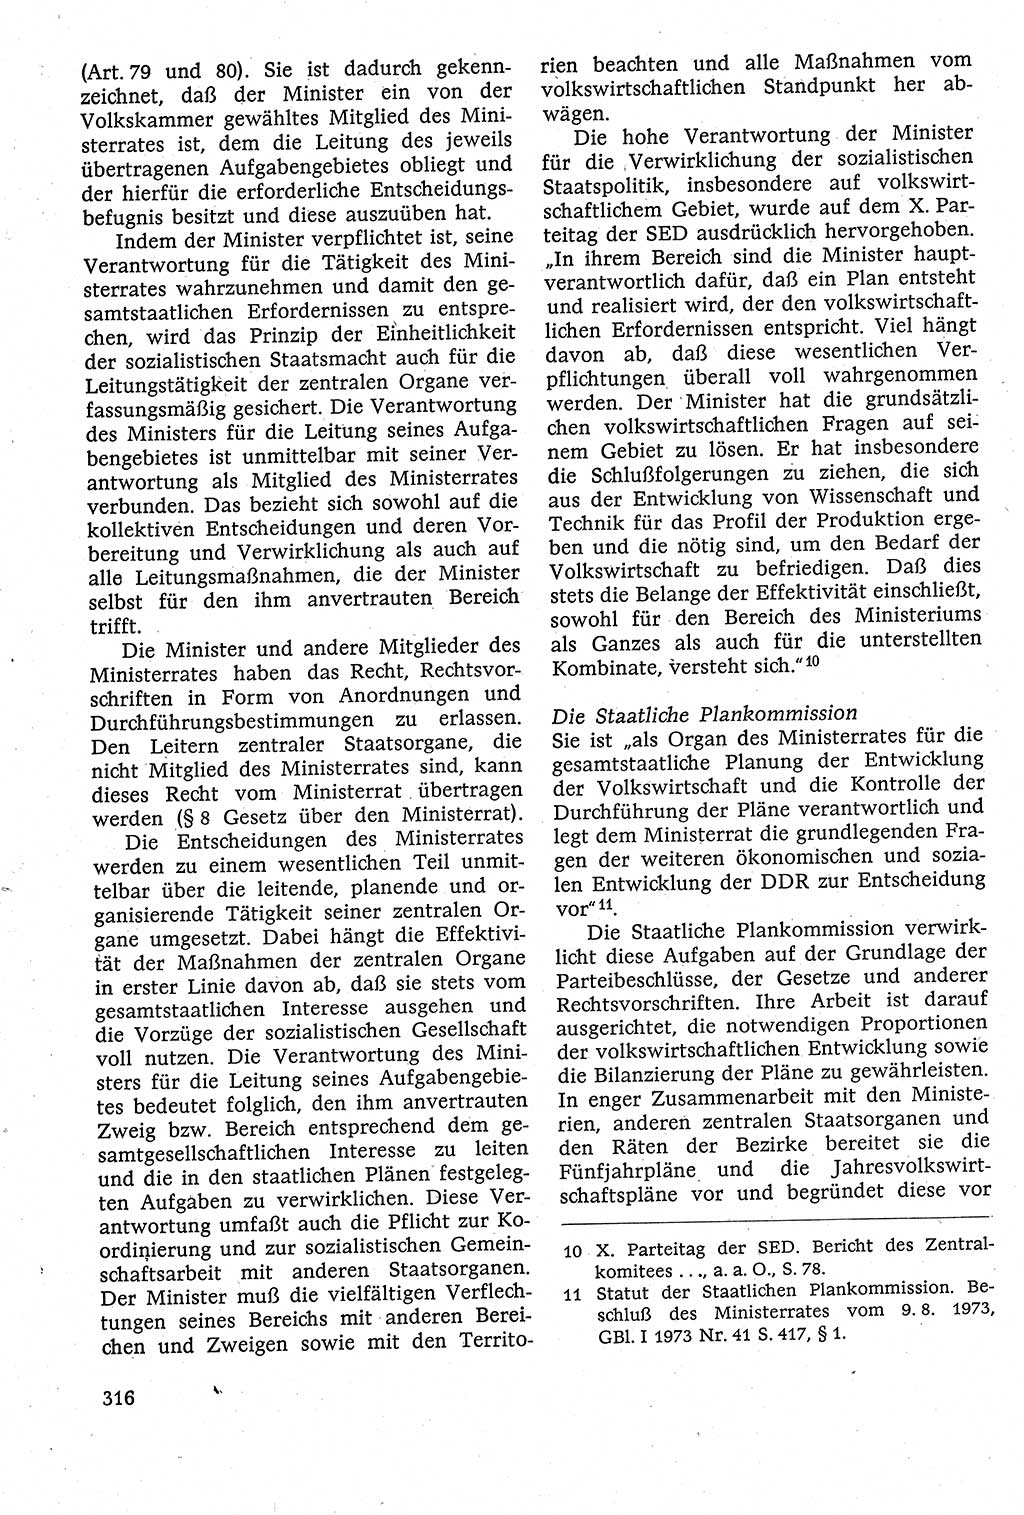 Staatsrecht der DDR [Deutsche Demokratische Republik (DDR)], Lehrbuch 1984, Seite 316 (St.-R. DDR Lb. 1984, S. 316)